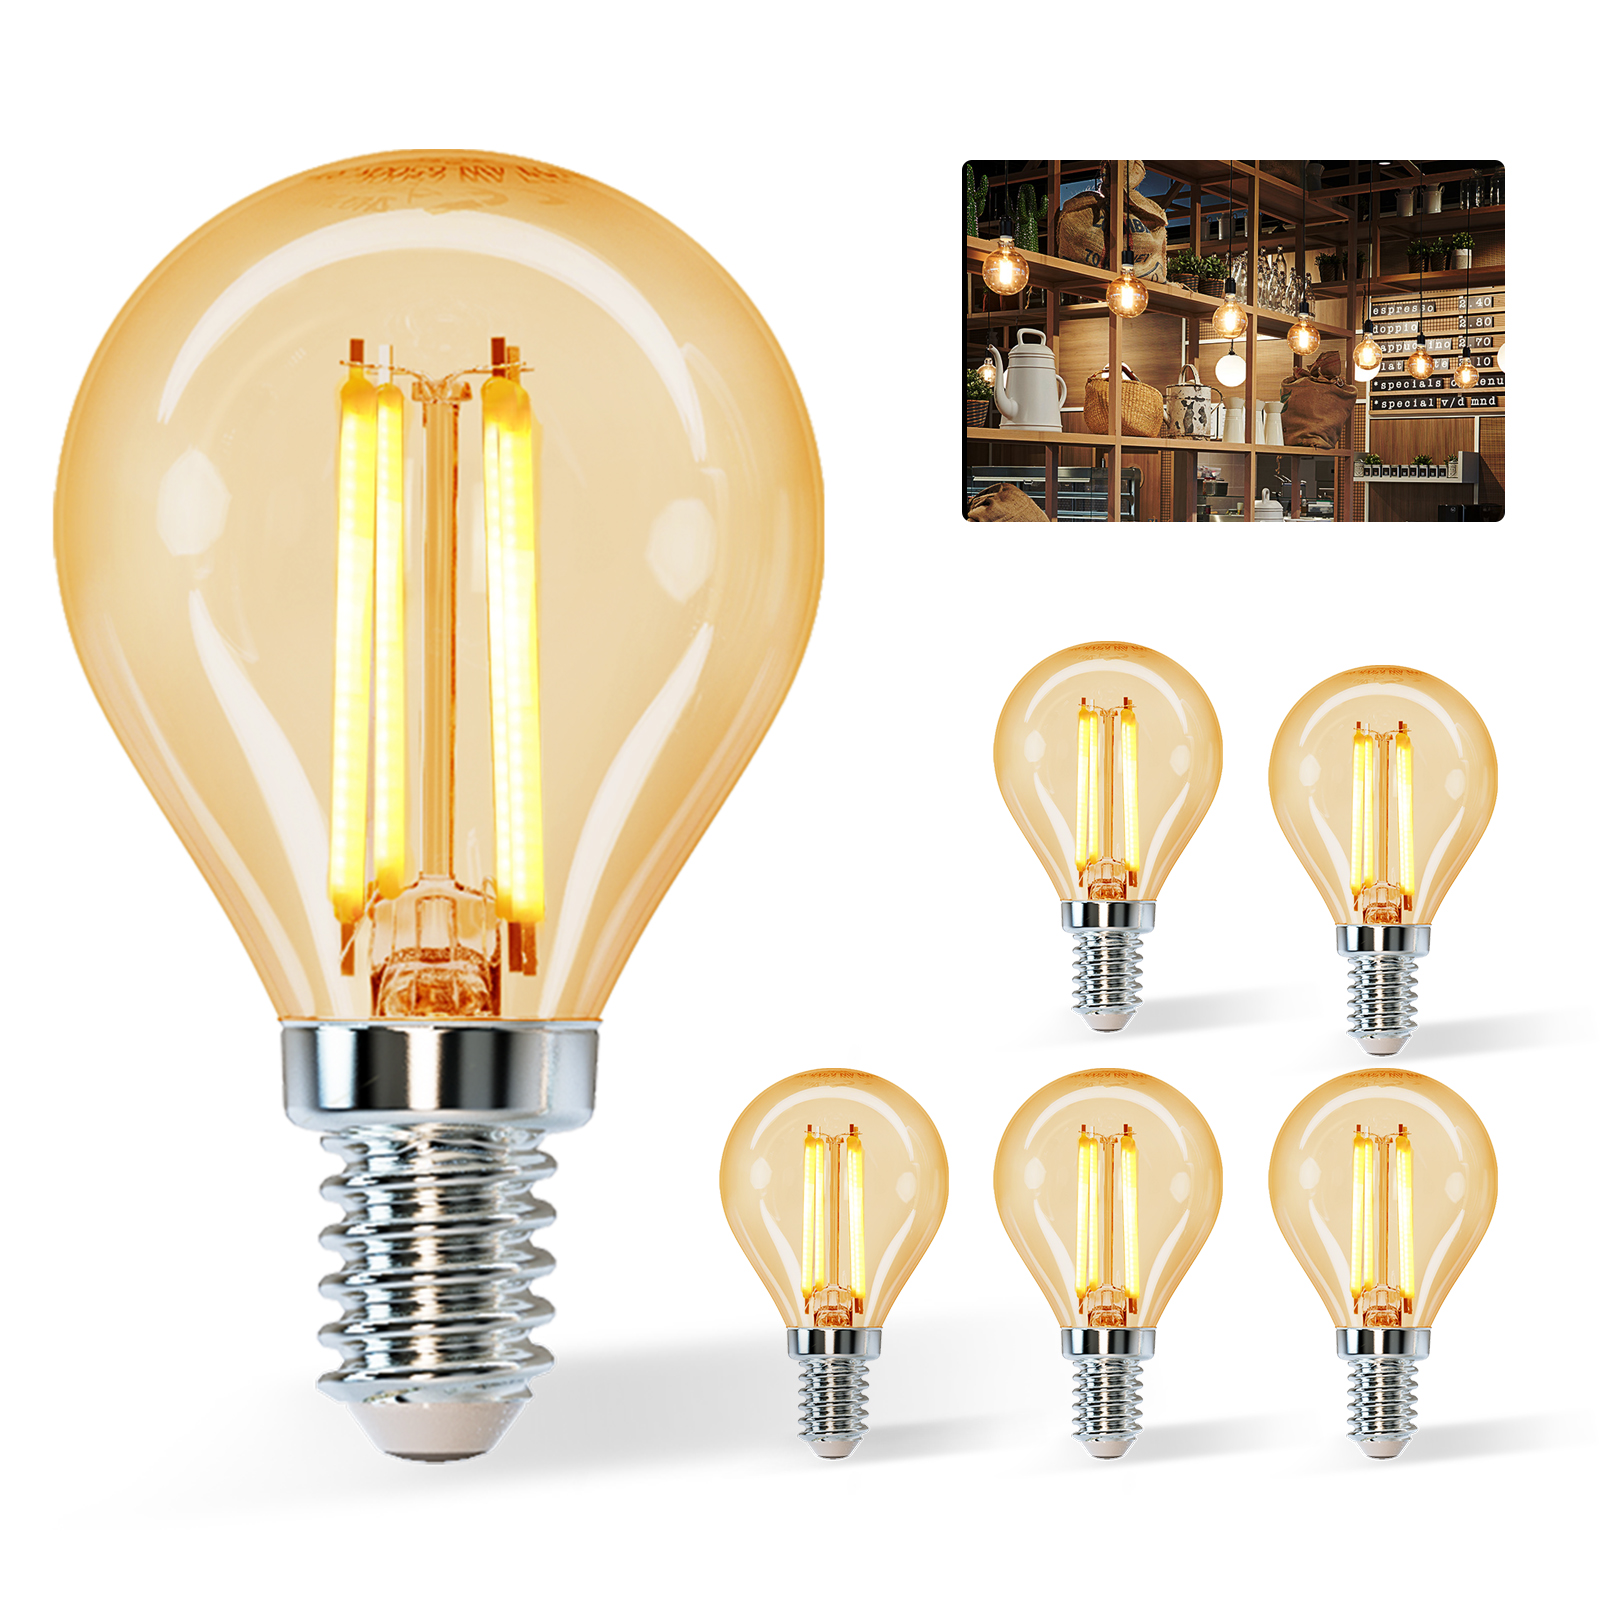 Aigostar Edison Lampadine LED E14, Luce Calda 2200K,4W(equivalente a 37W),420LM,Lampadine di Filamento G45,Lampade Decorativa Retrò per Bar Caffè Hotel, 5 Pezzo